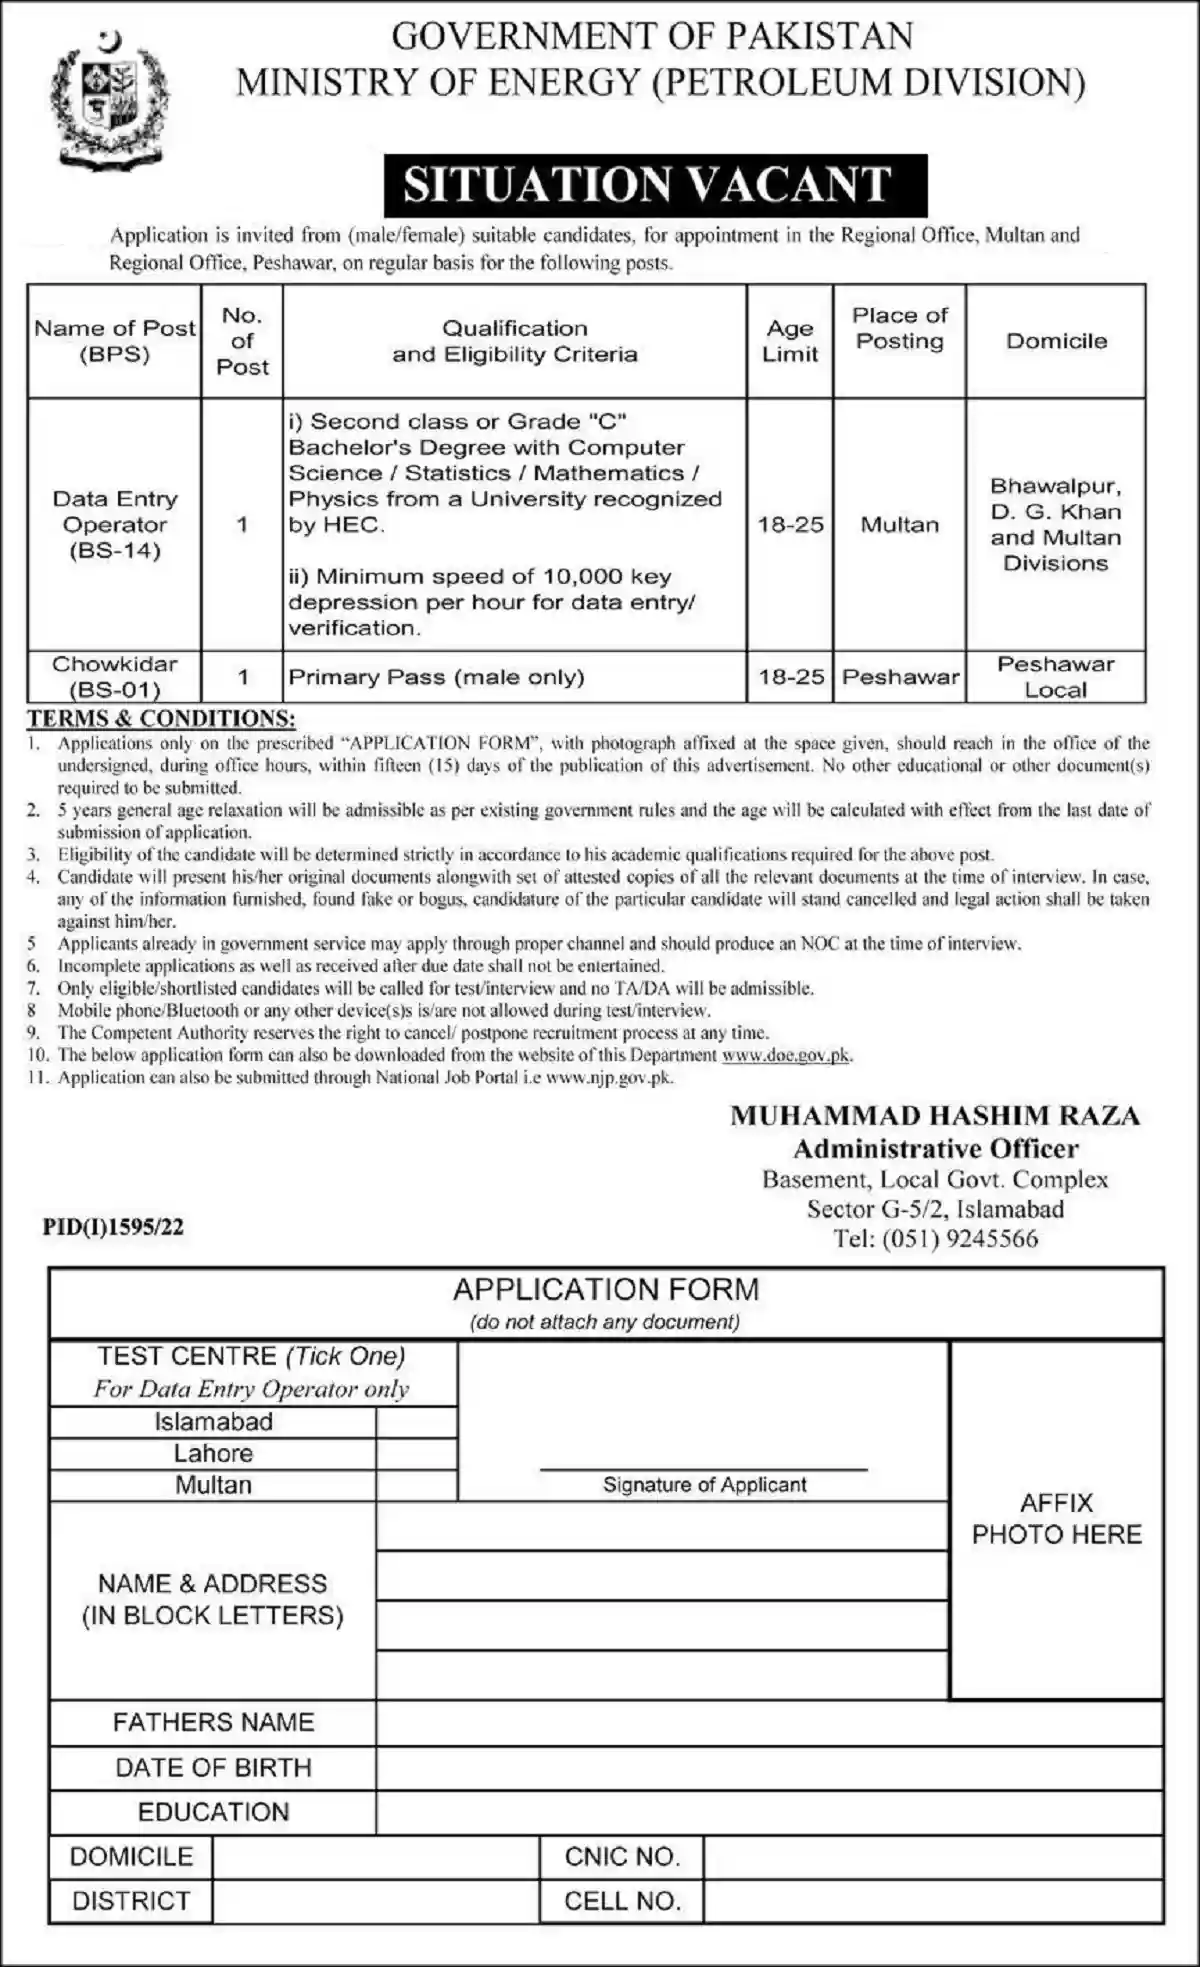 Ministry of Energy Petroleum Division Jobs 2022 www.doe.gov.pk